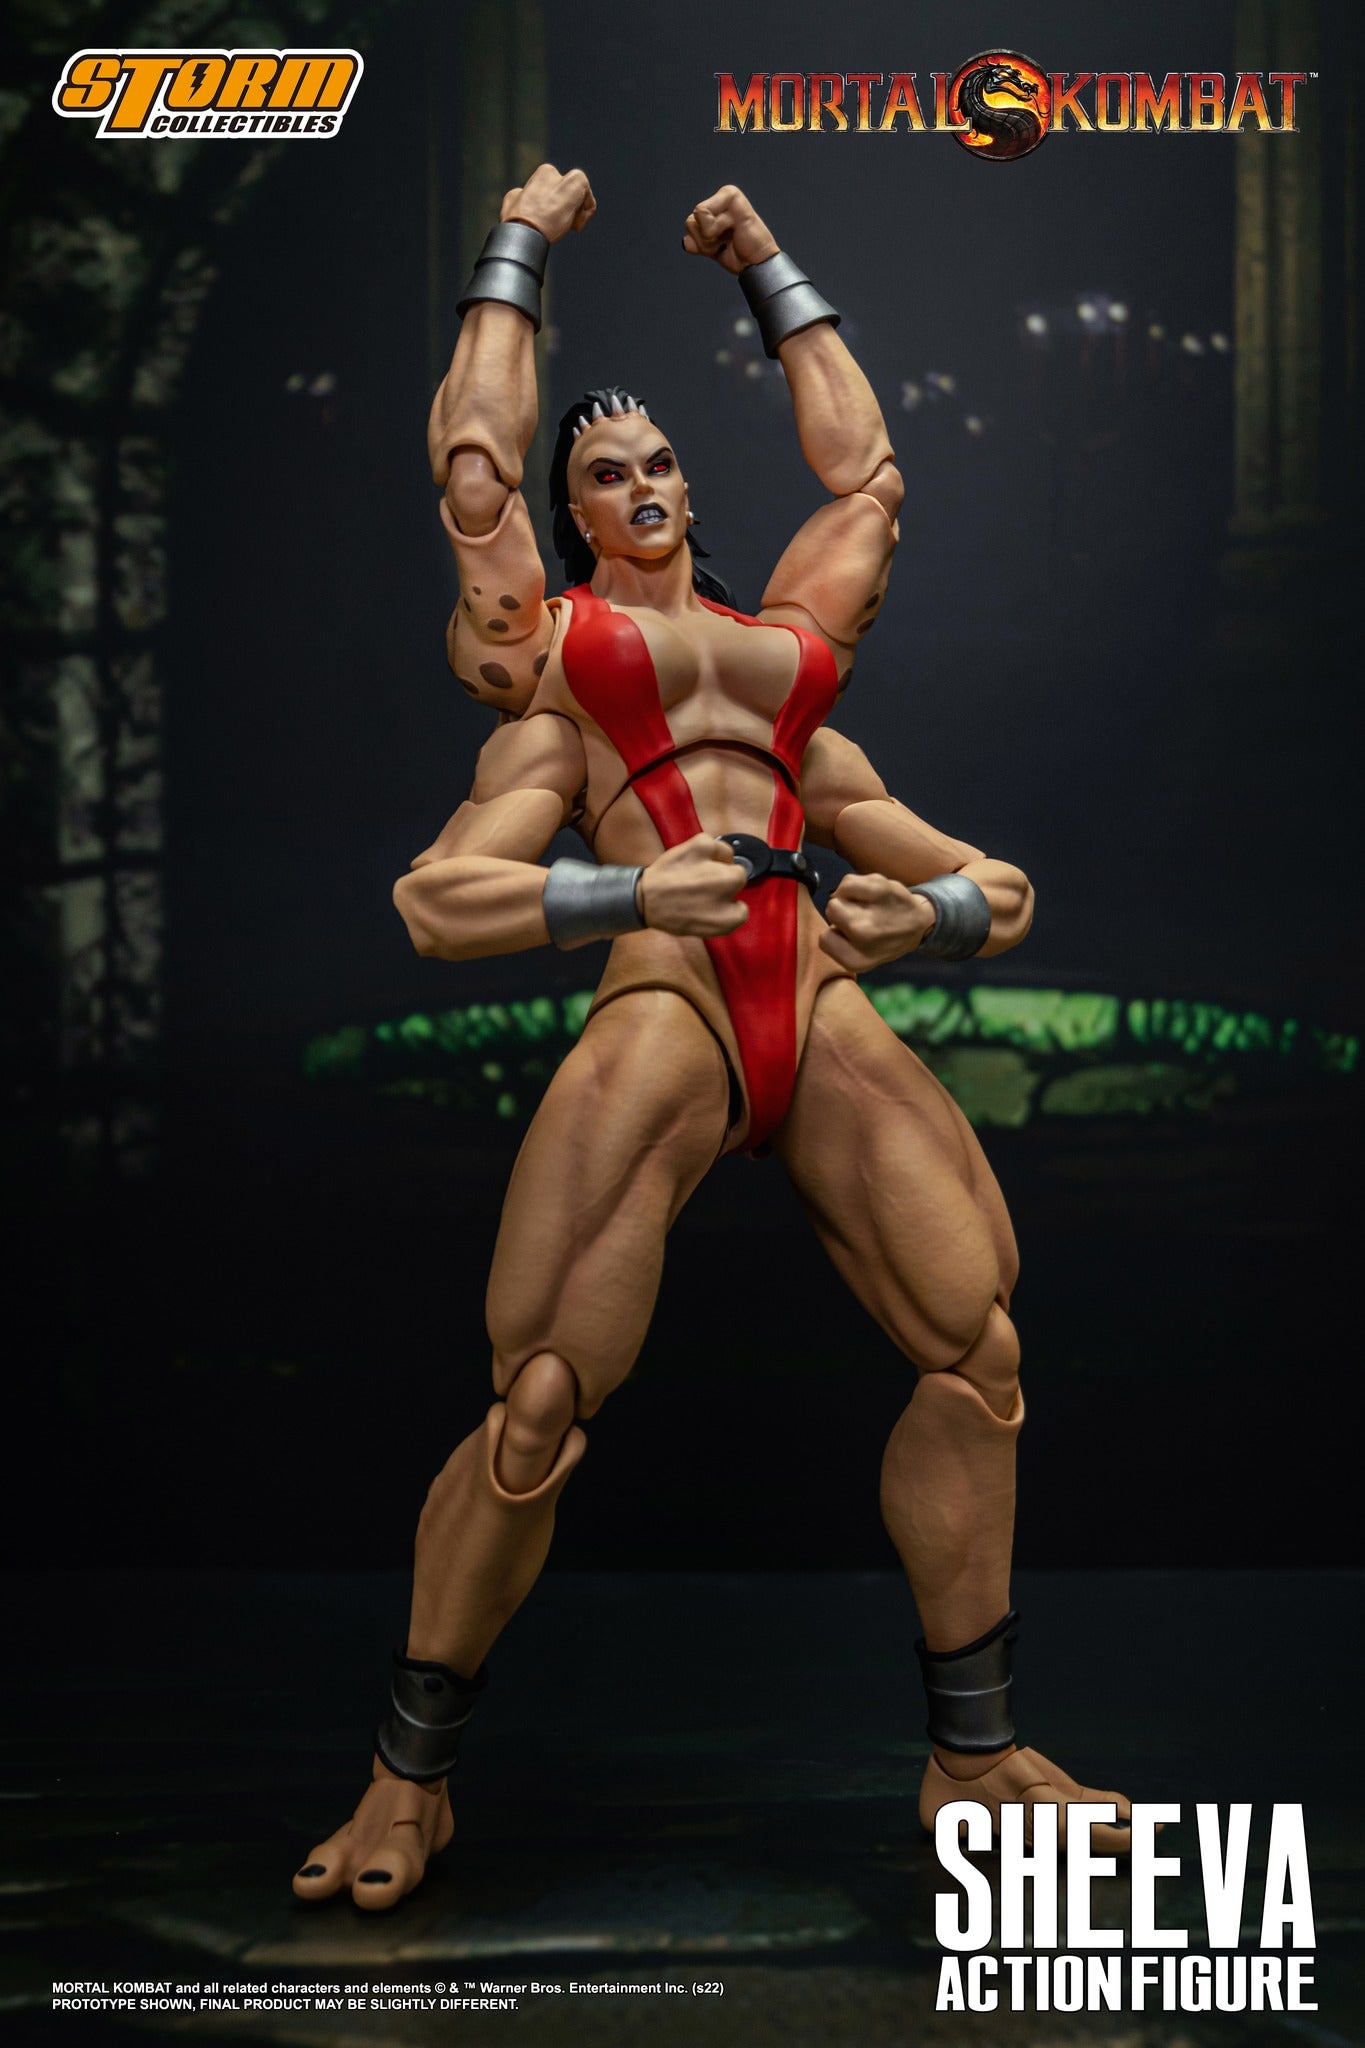 Preventa Figura Sheeva - Mortal Kombat marca Storm Collectibles escala 1/12